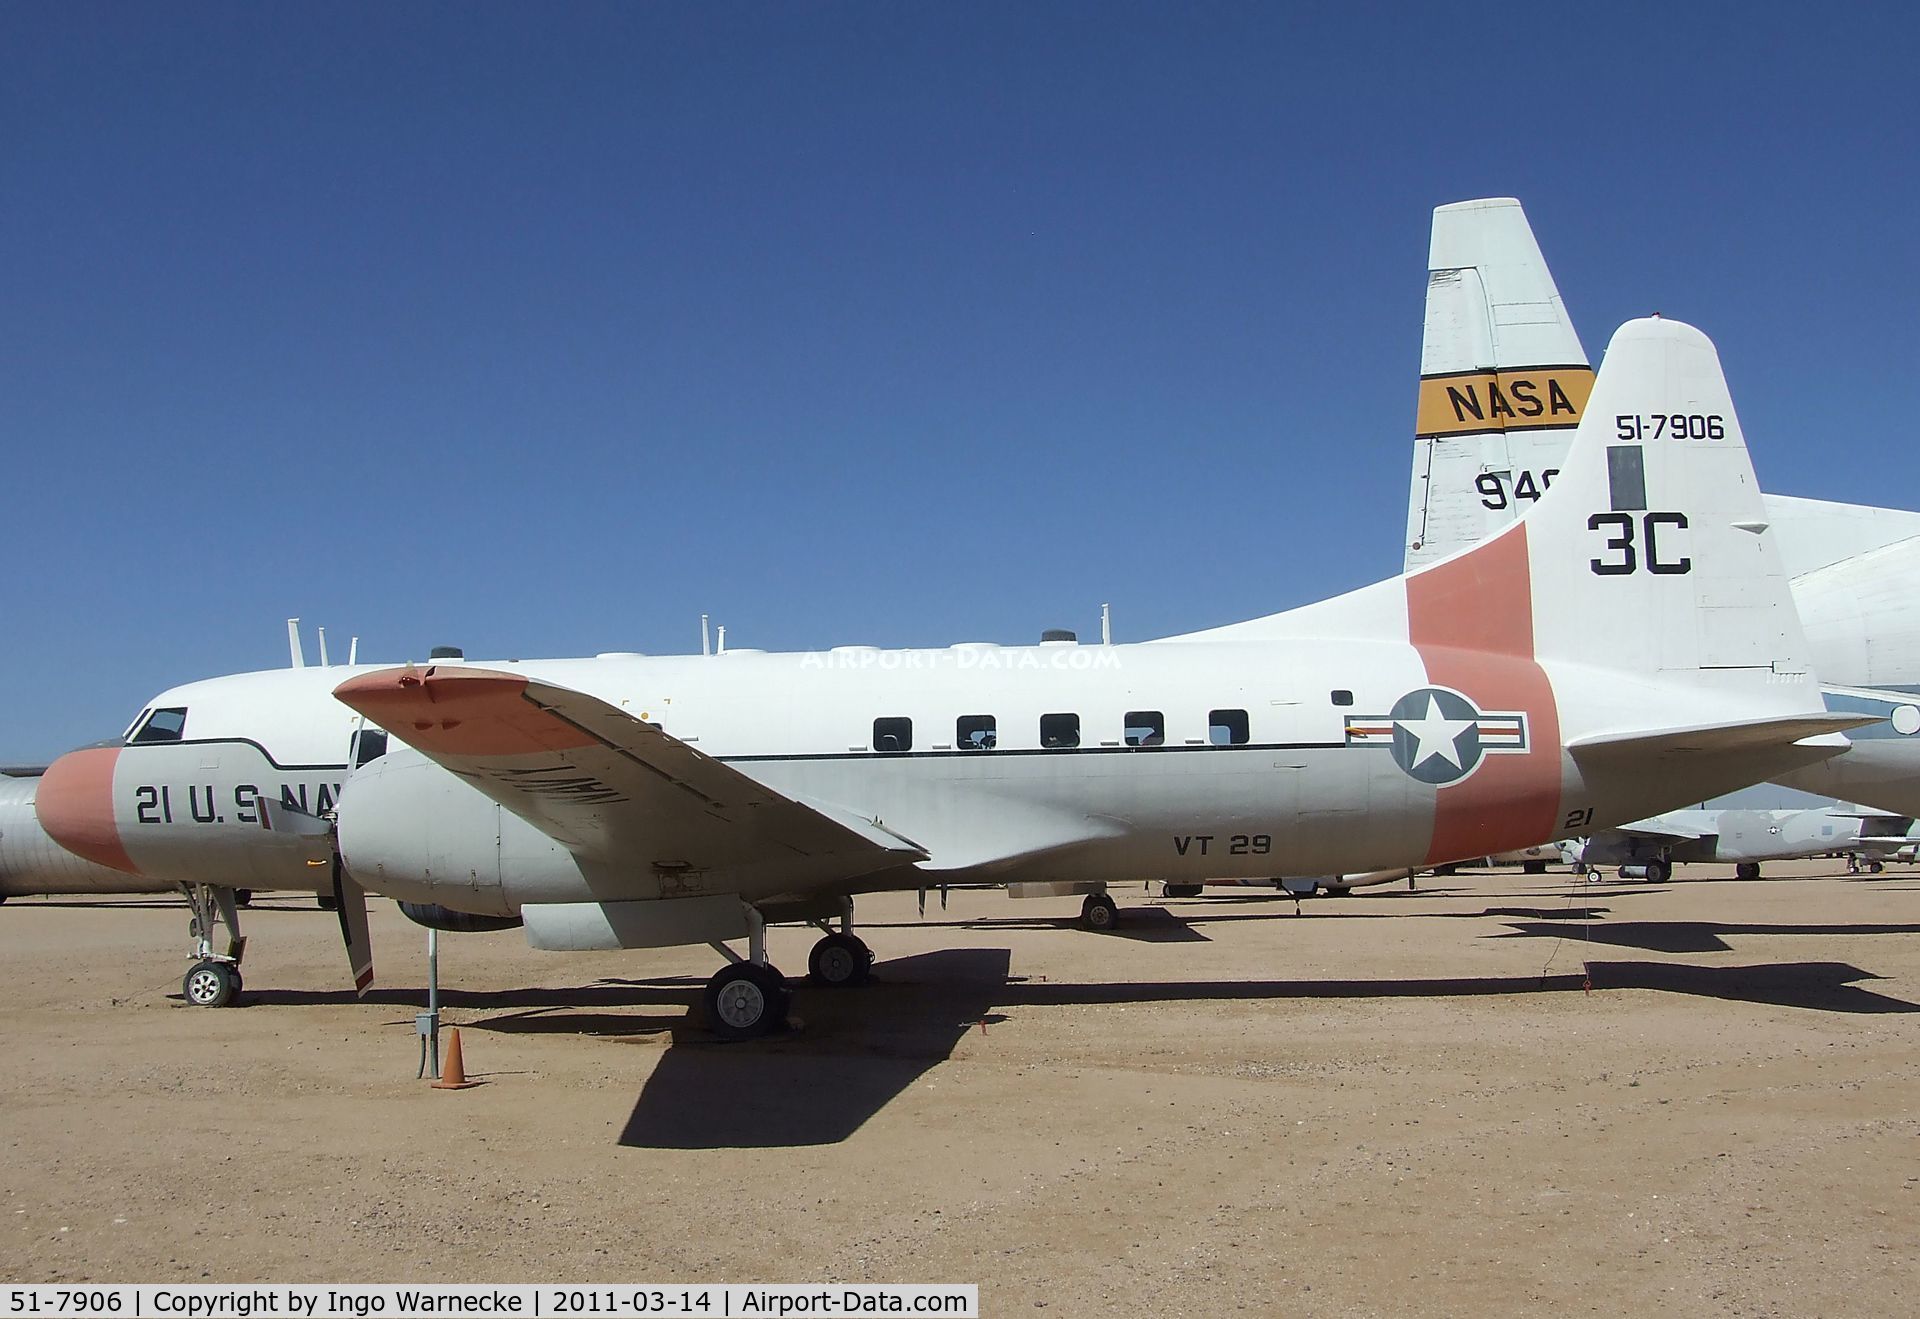 51-7906, 1951 Convair T-29B C/N 240-318, Convair T-29B at the Pima Air & Space Museum, Tucson AZ